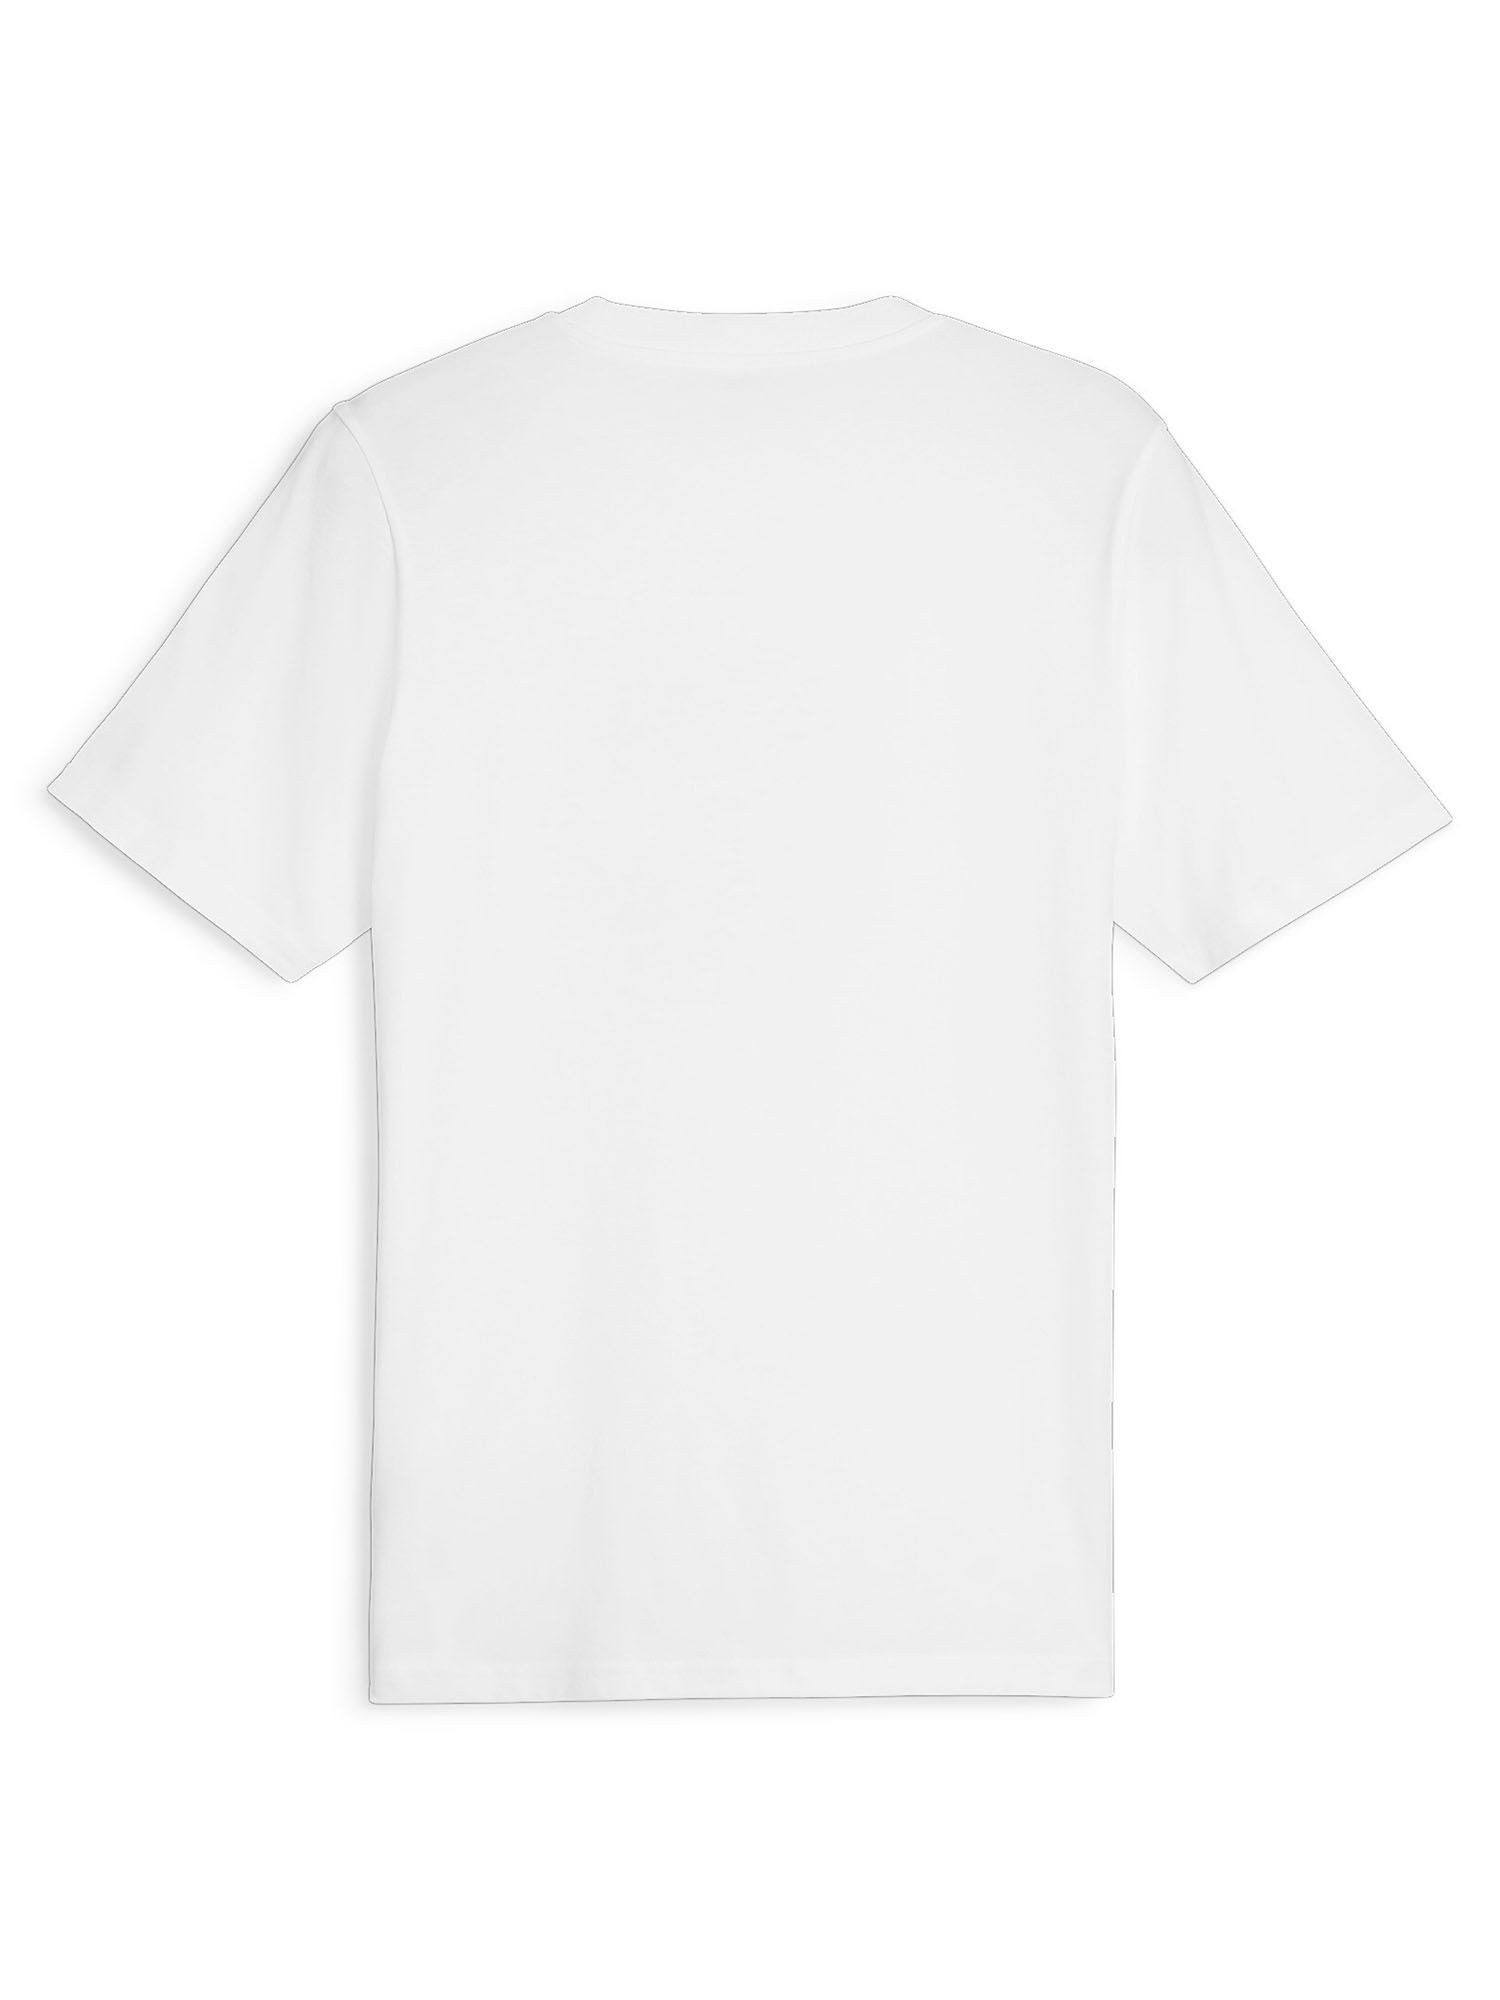 Puma Graphics Men's T-Shirt - White | eBay